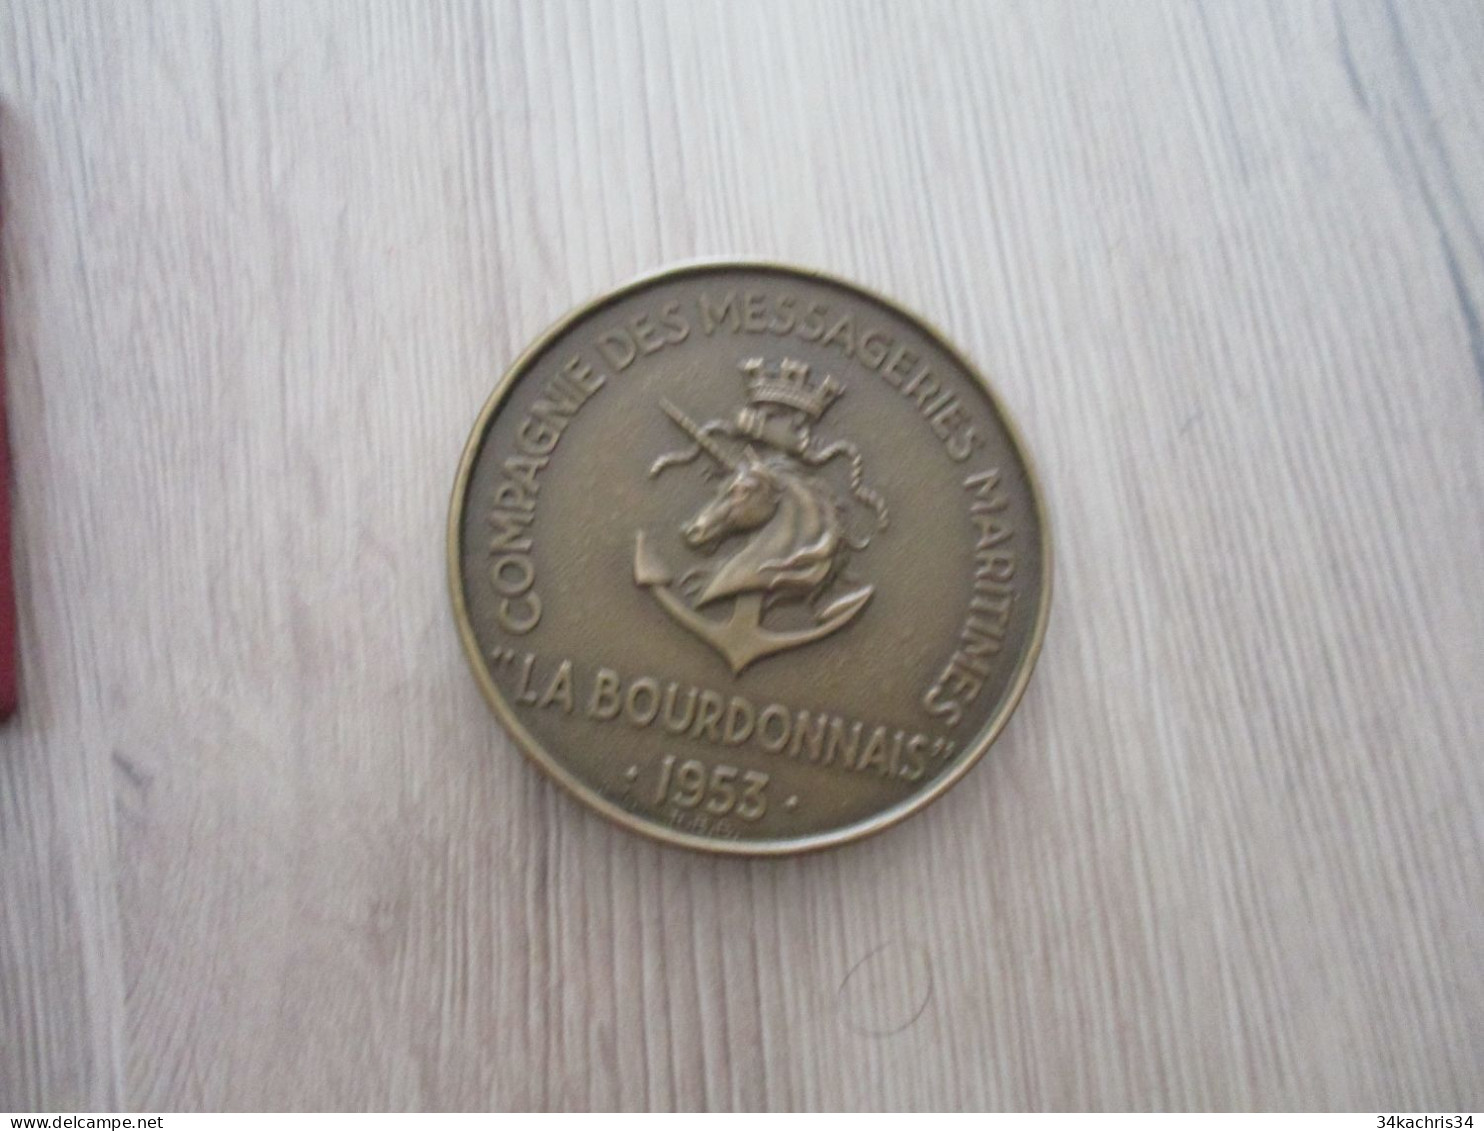 Médaille De Table La Bourdonnais Compagnies Messageries Maritimes 1953 5.5 Diam 100g Environs Dans Sa Boite - Décoration Maritime